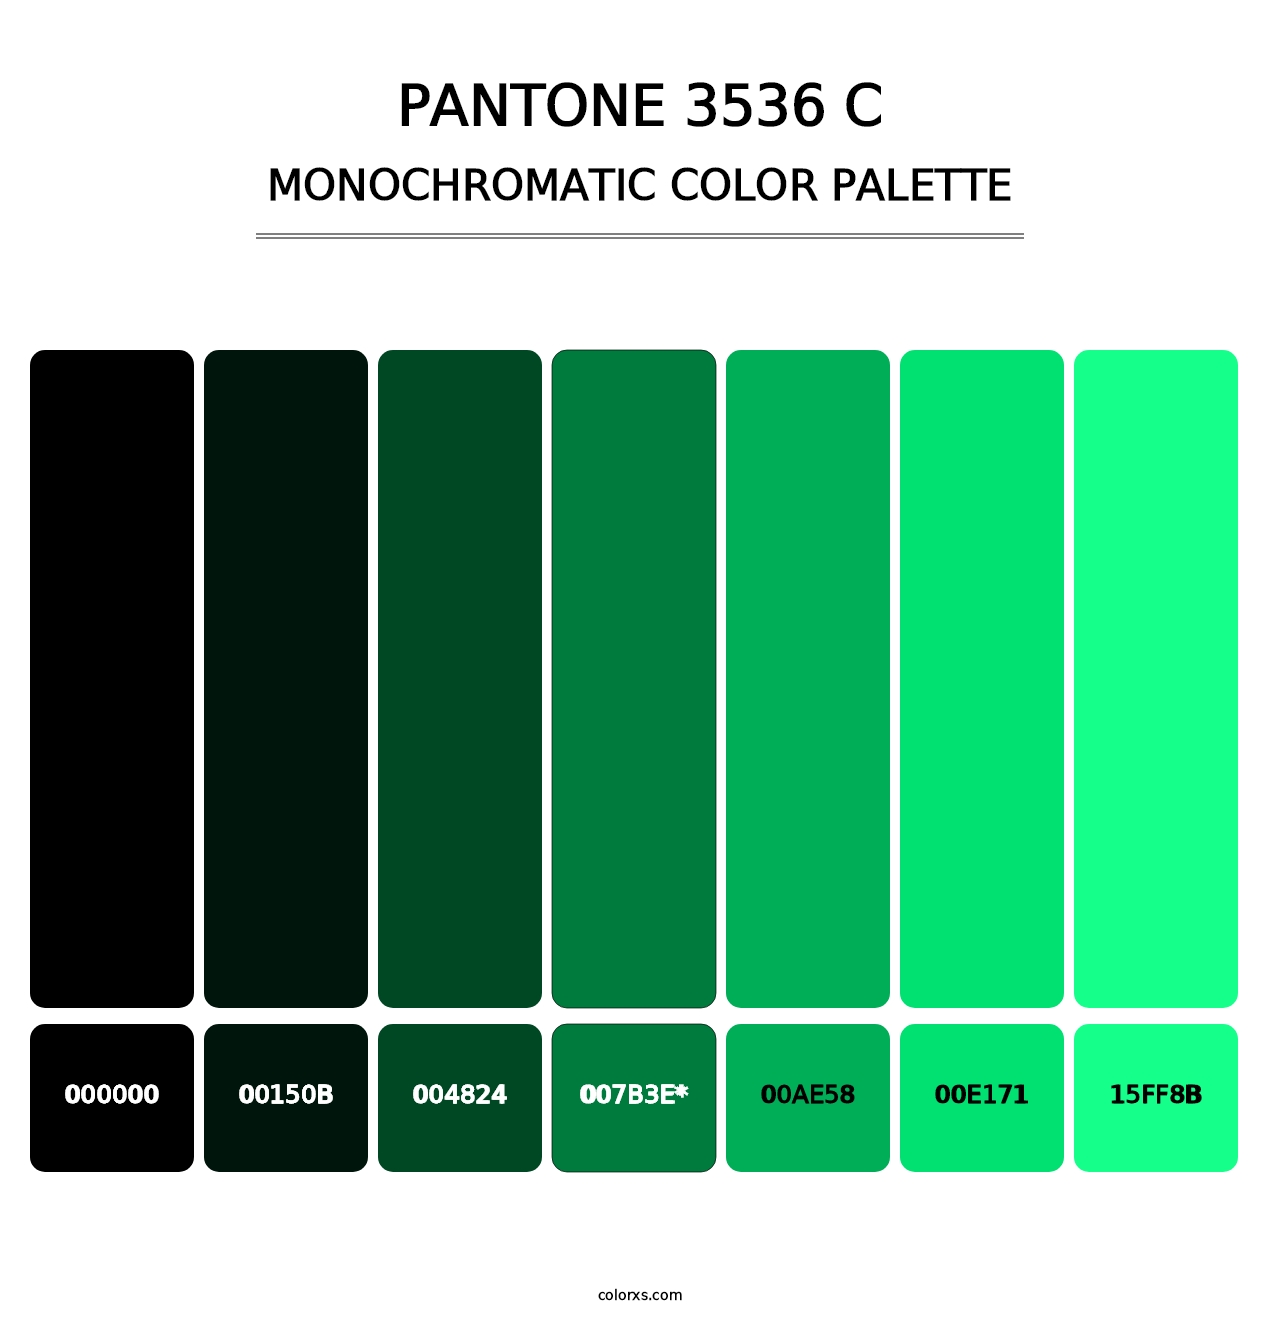 PANTONE 3536 C - Monochromatic Color Palette